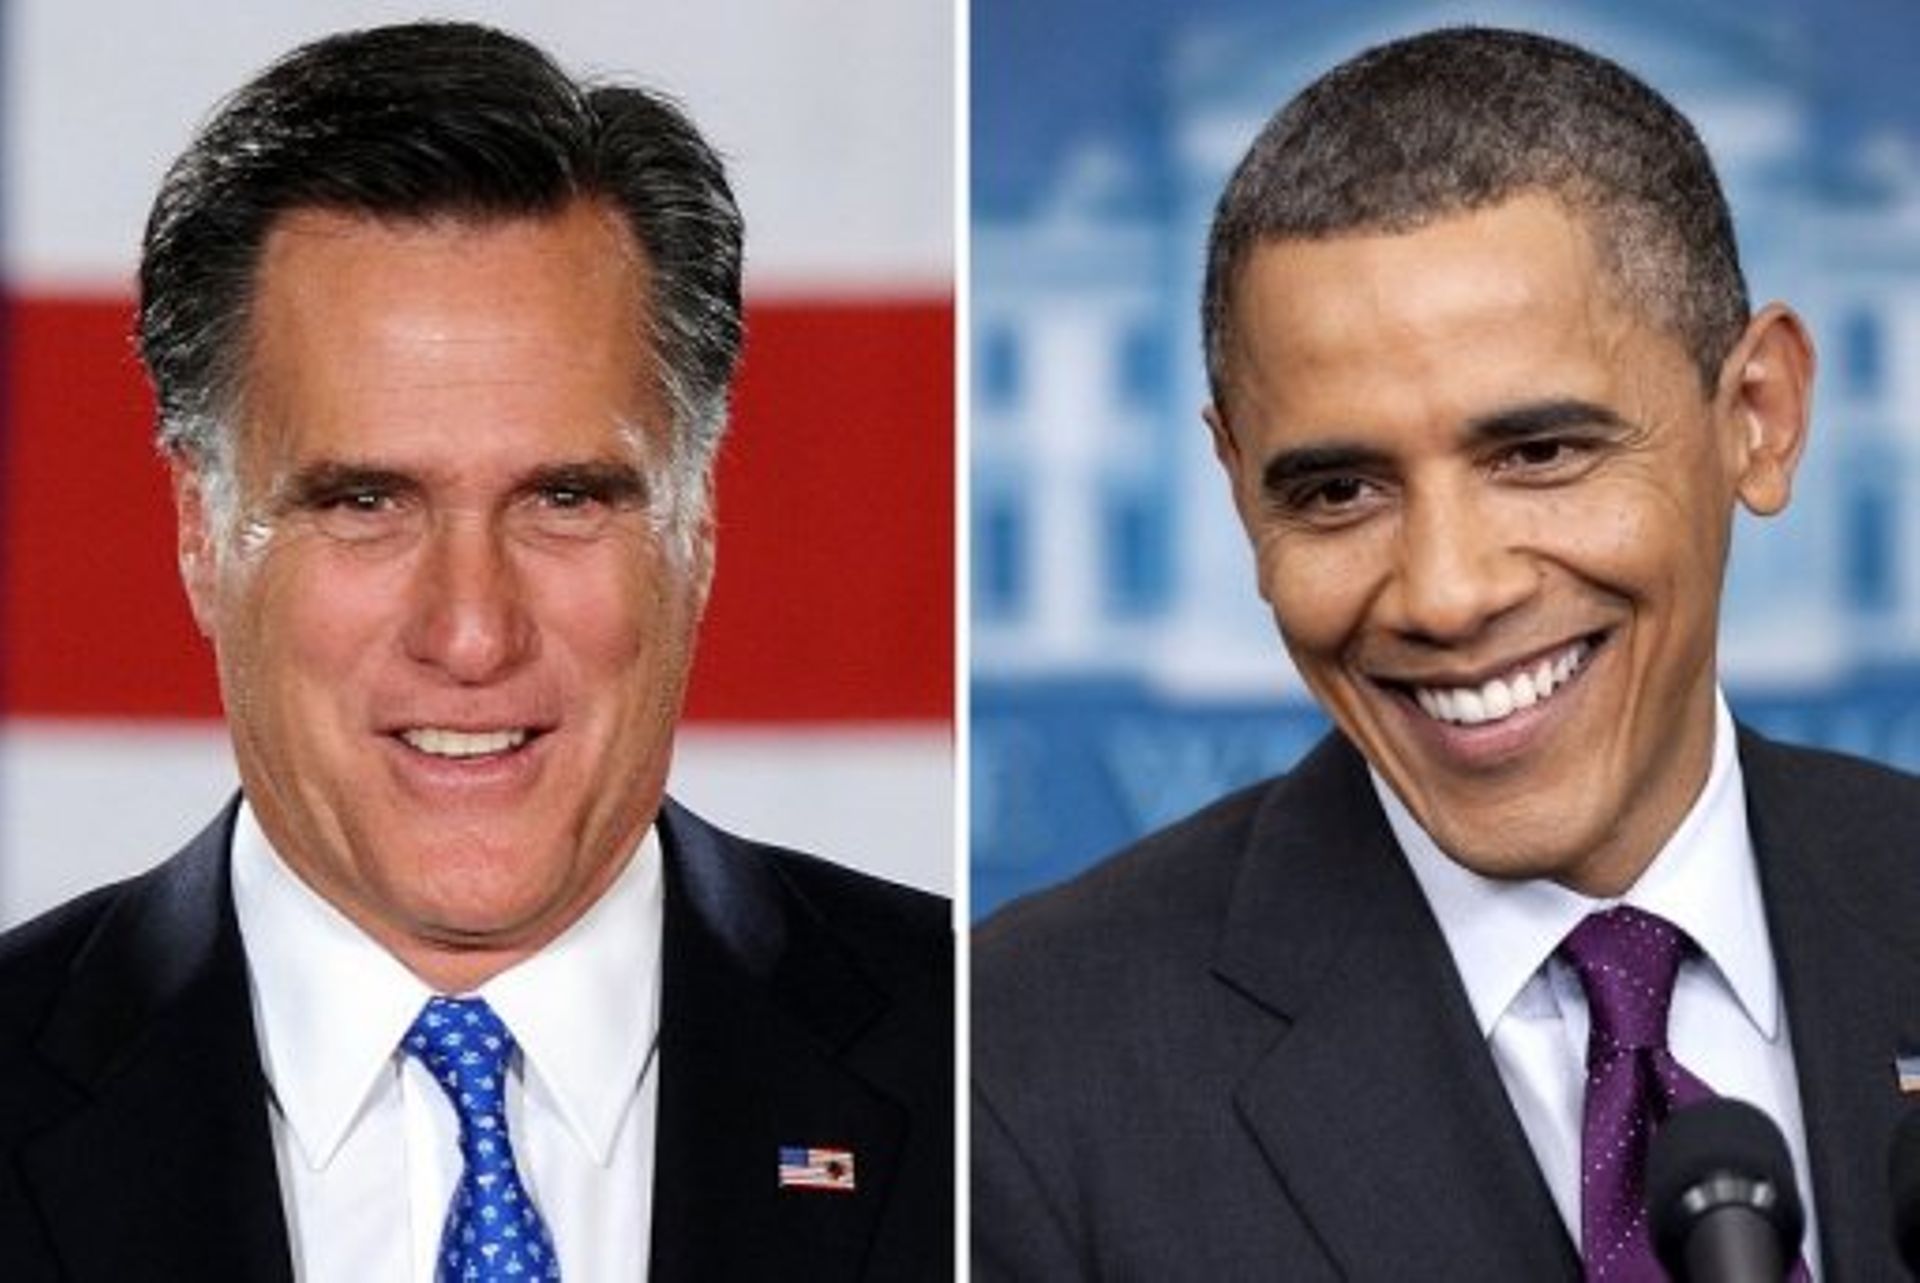 Romney n'est pas allé à la rencontre des Américains, d'après Obama